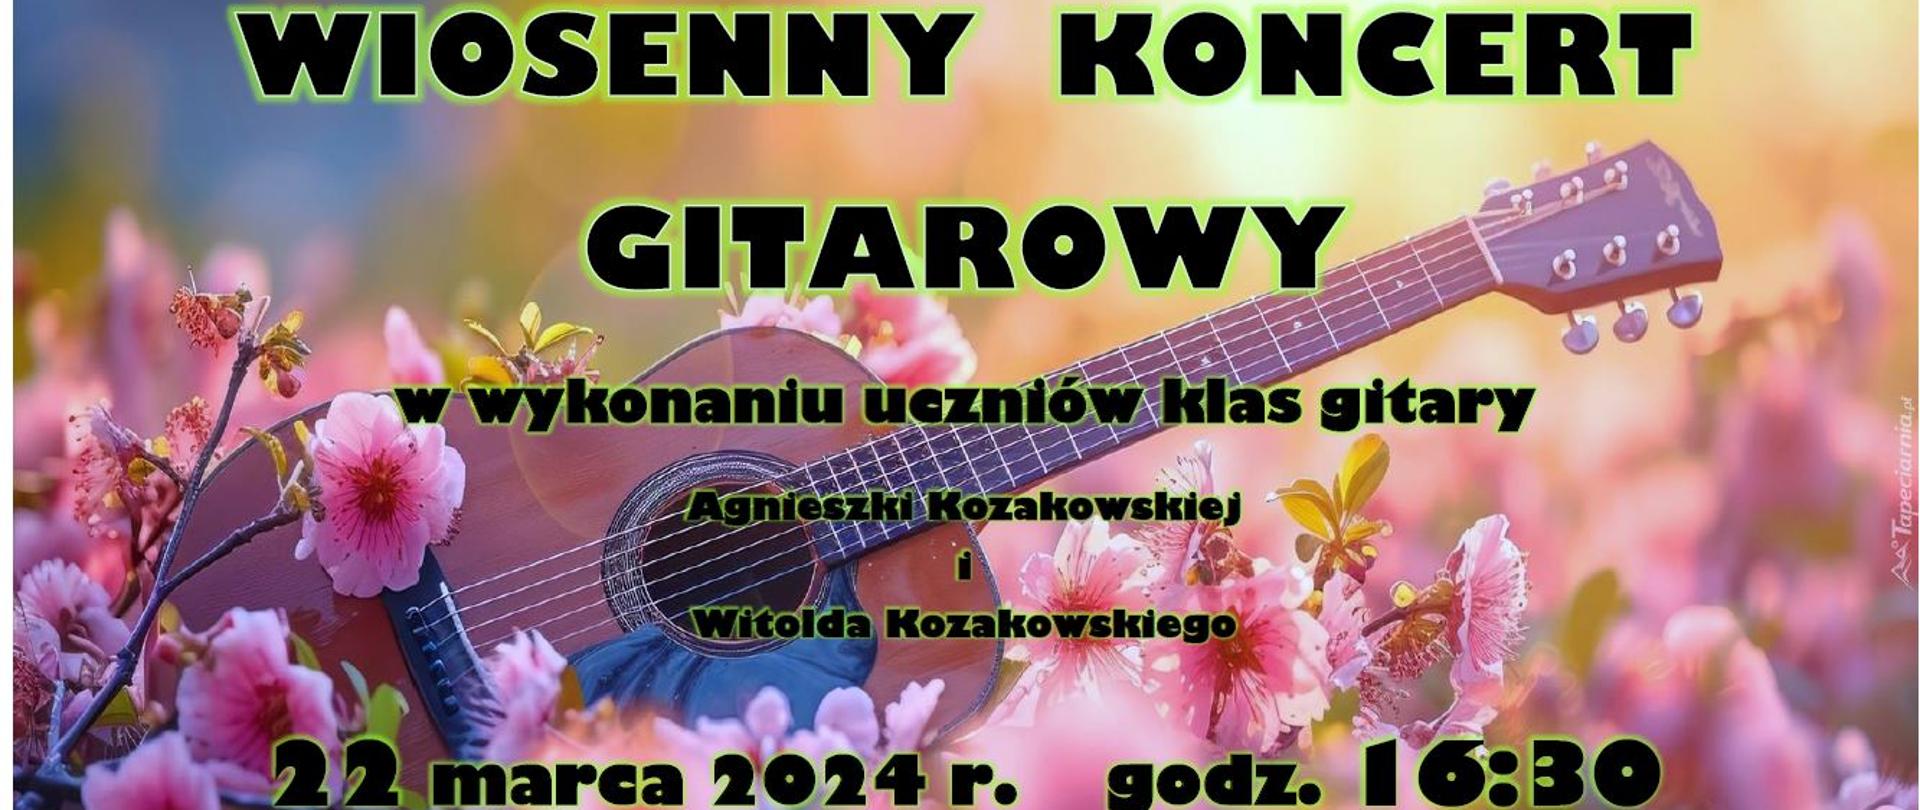 Plakat na kolorowym tle z grafiką gitary oraz kwiatów z informacją tekstowa dotyczącą Wiosennego Koncertu Gitarowego uczniów klas gitary A. Kozakowskiej i W. Kozakowskiego - 22 marca 2024